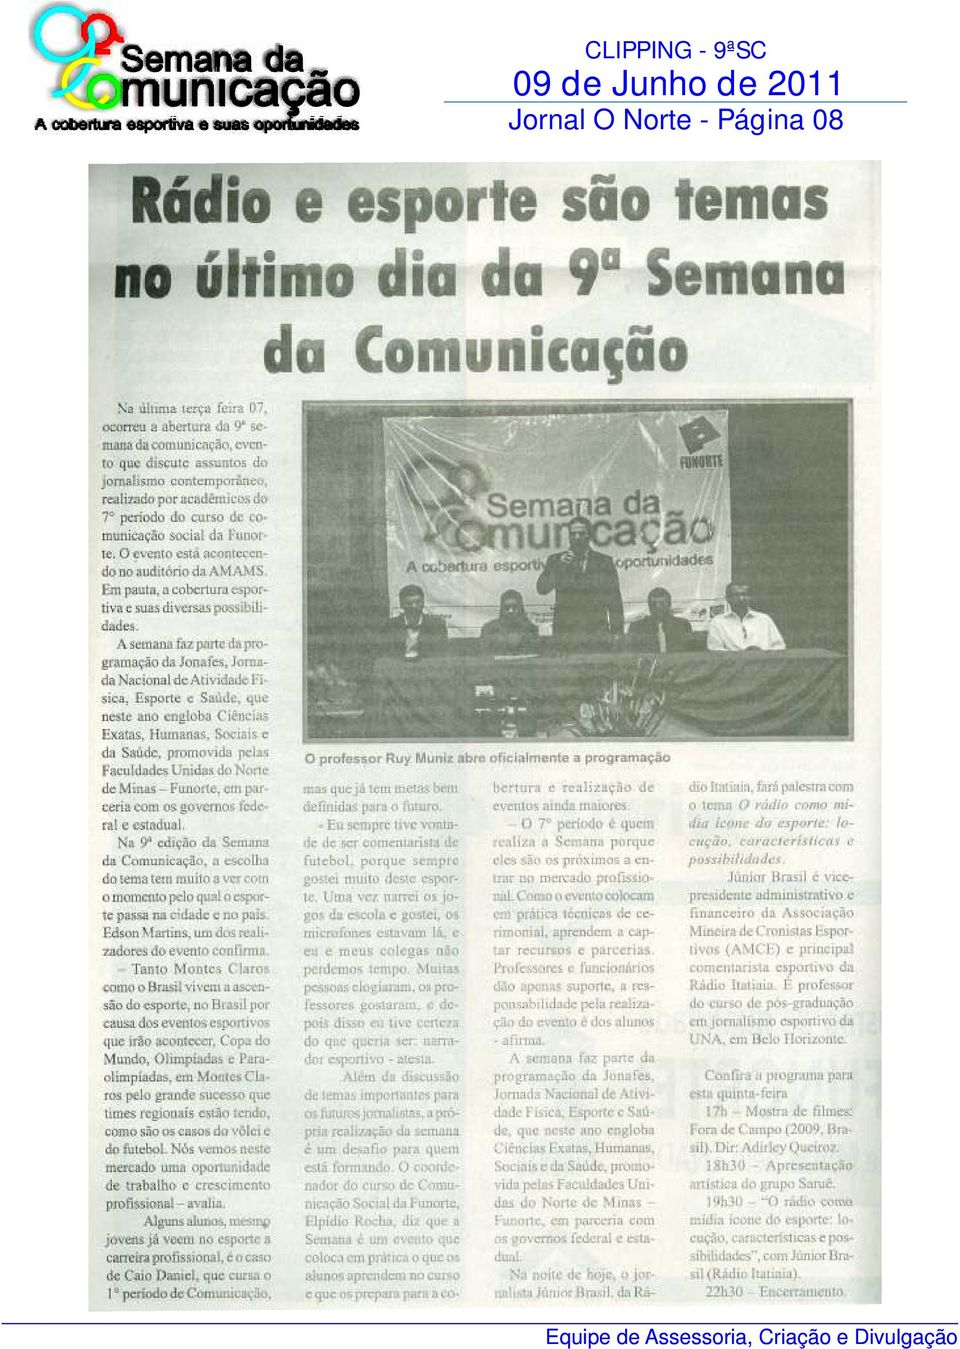 9ªSC Jornal O